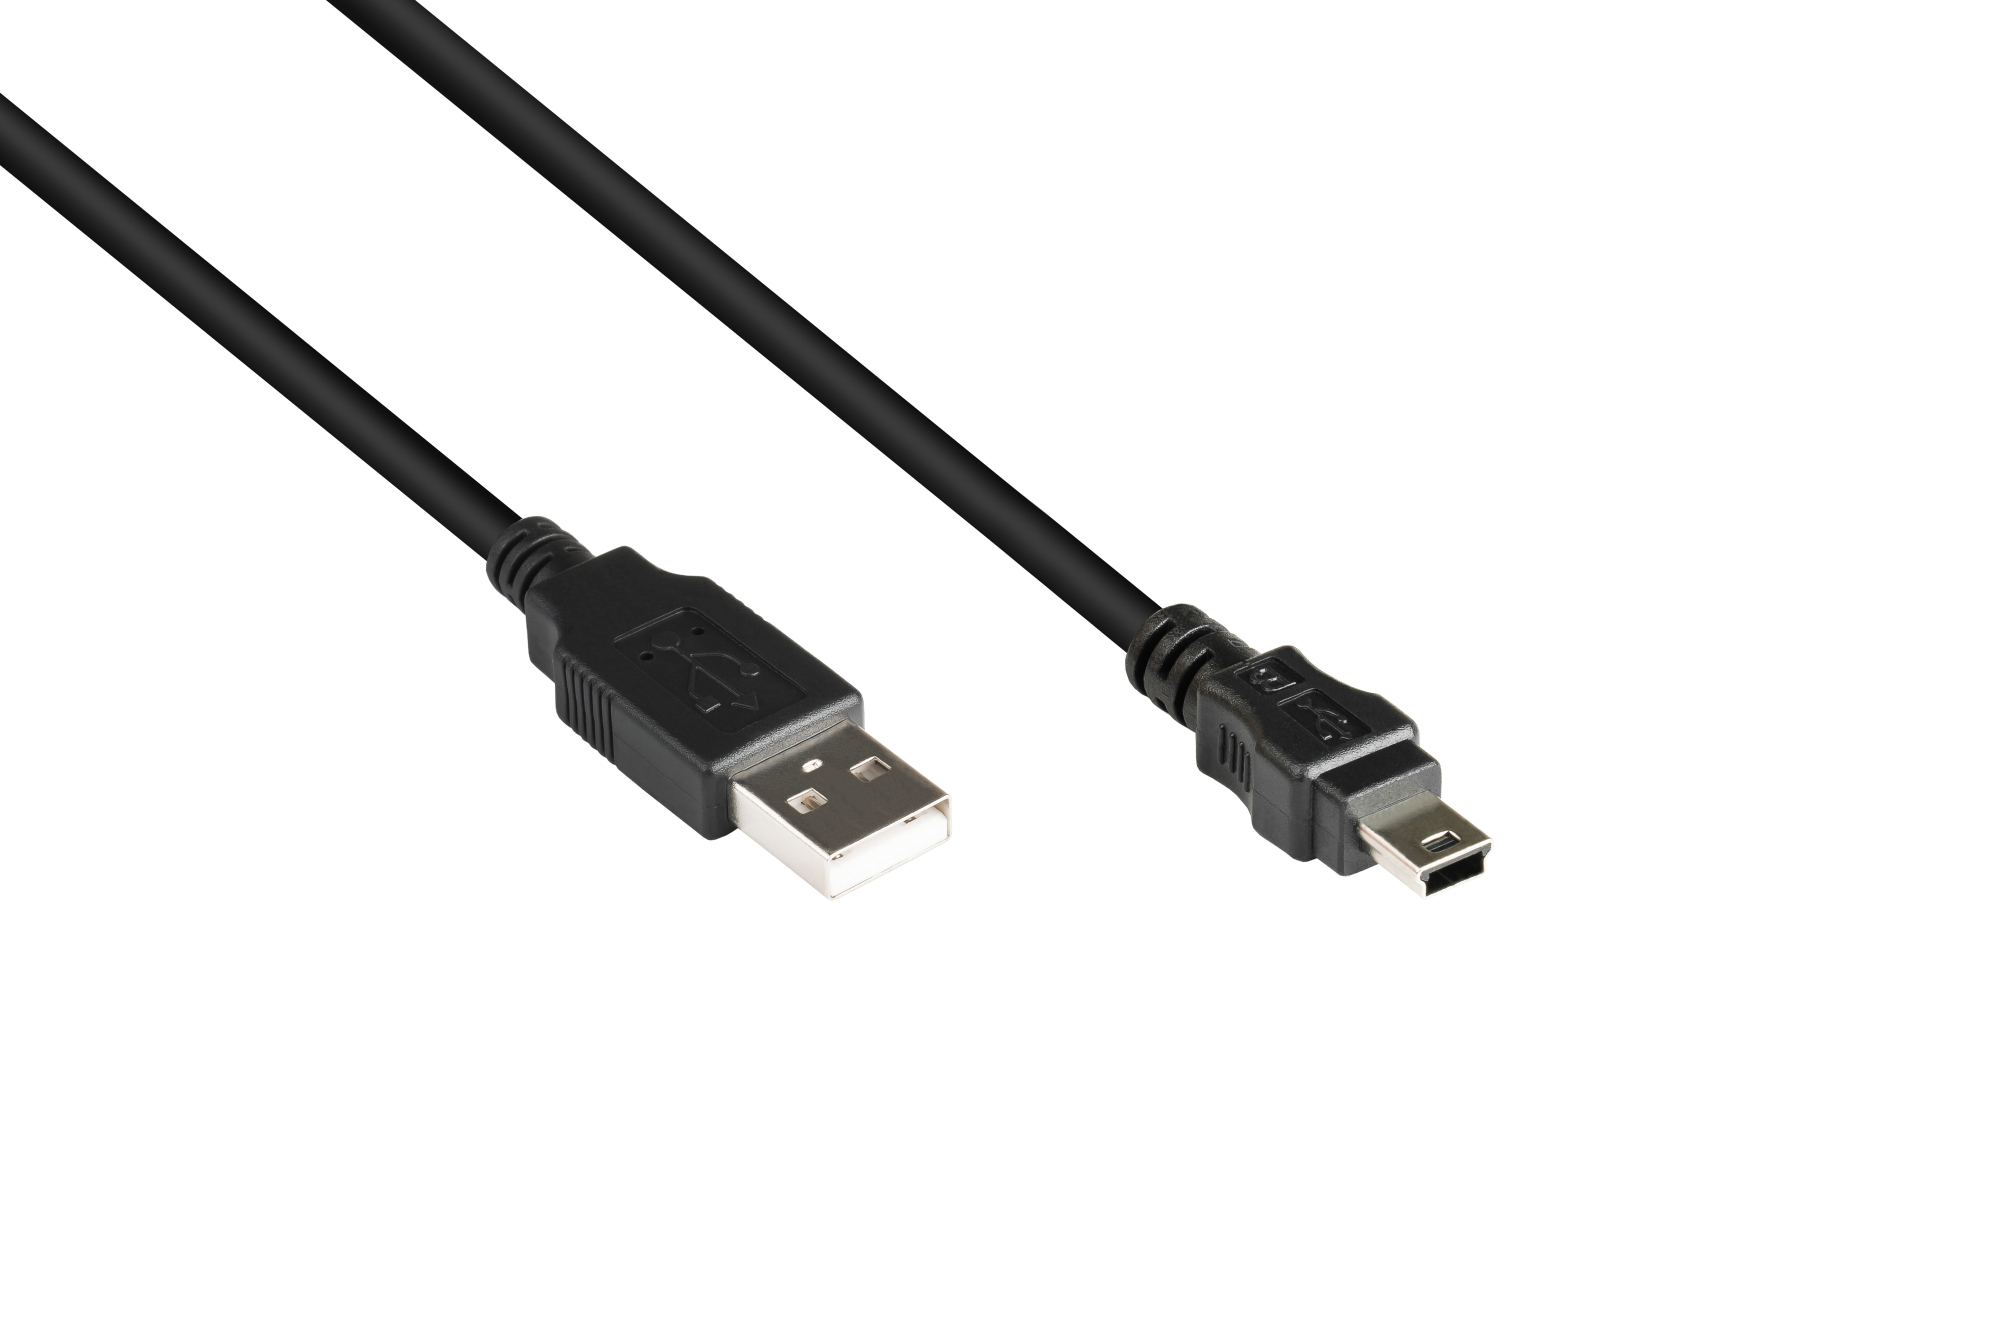 Anschlusskabel USB 2.0 Stecker A an Stecker Mini B 5-pin, schwarz, 1,8m, Good Connections®